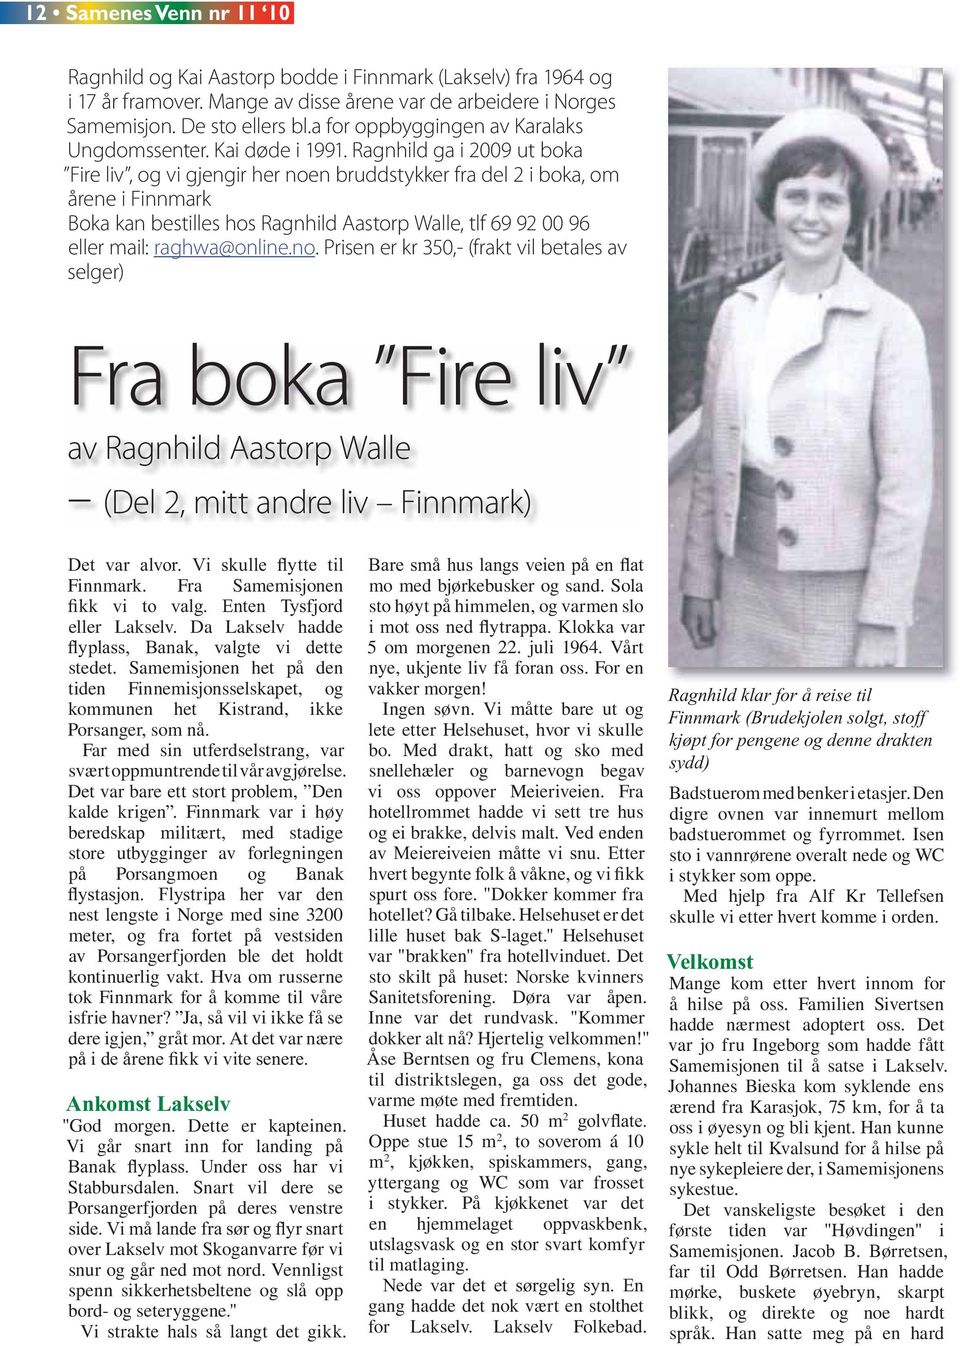 Ragnhild ga i 2009 ut boka Fire liv, og vi gjengir her noen bruddstykker fra del 2 i boka, om årene i Finnmark Boka kan bestilles hos Ragnhild Aastorp Walle, tlf 69 92 00 96 eller mail: raghwa@online.